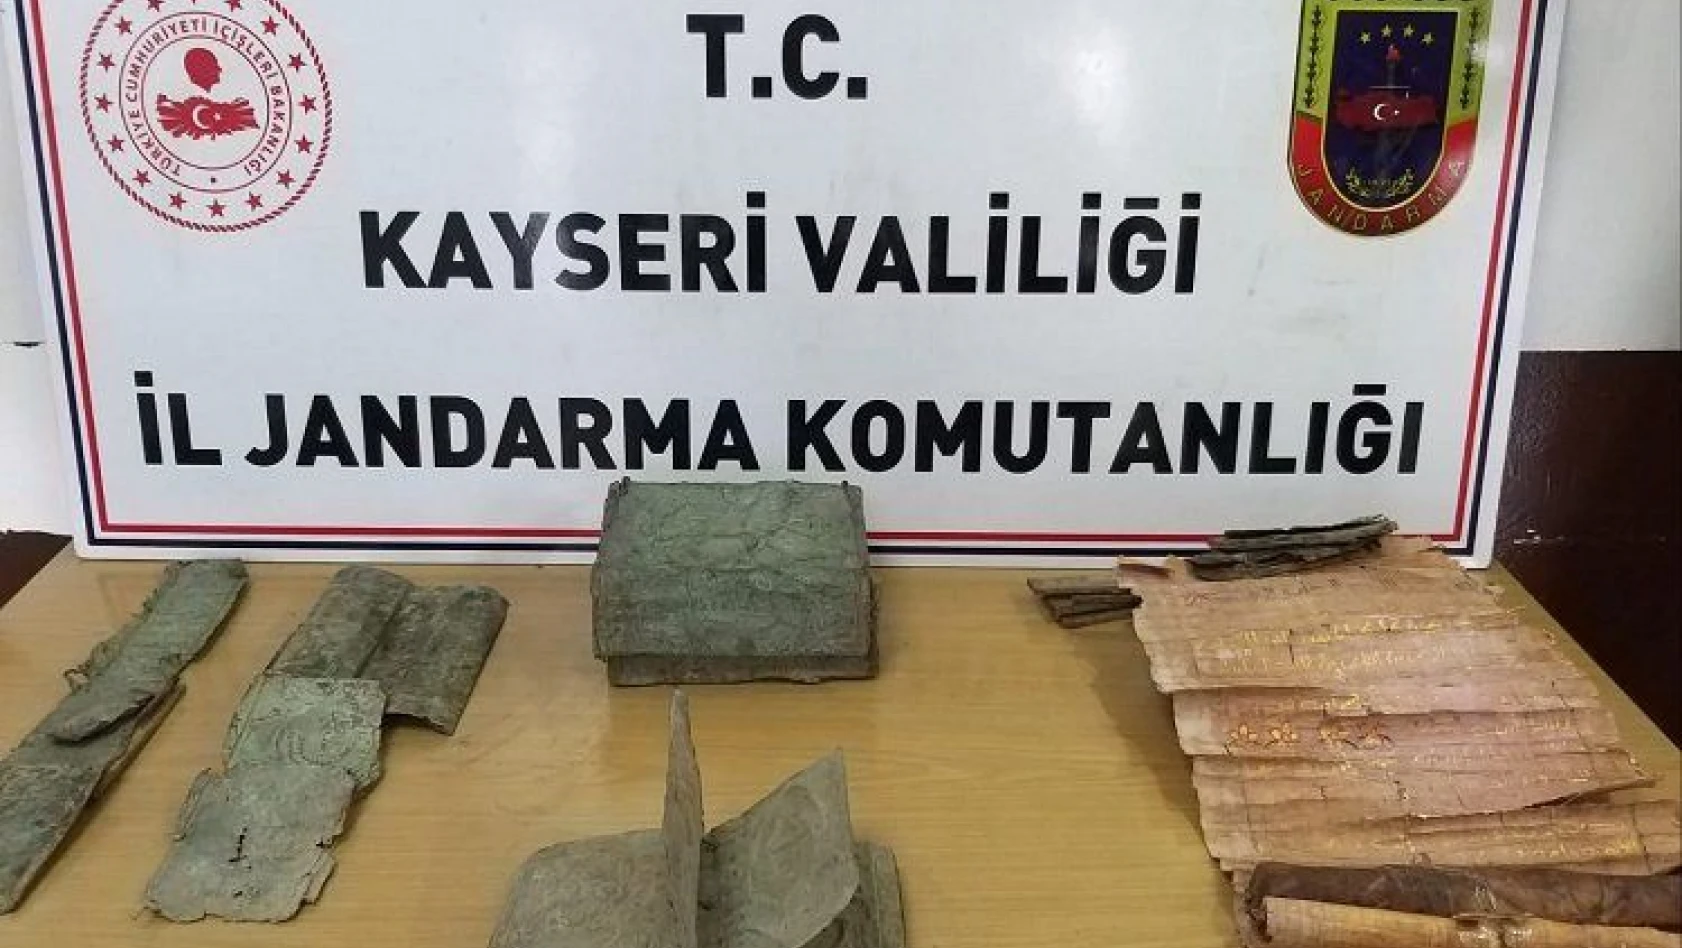 Kayseri'de ağaç kabuğuna yazılmış altın yaldızlı tarihi belge kılıfı ele geçirildi